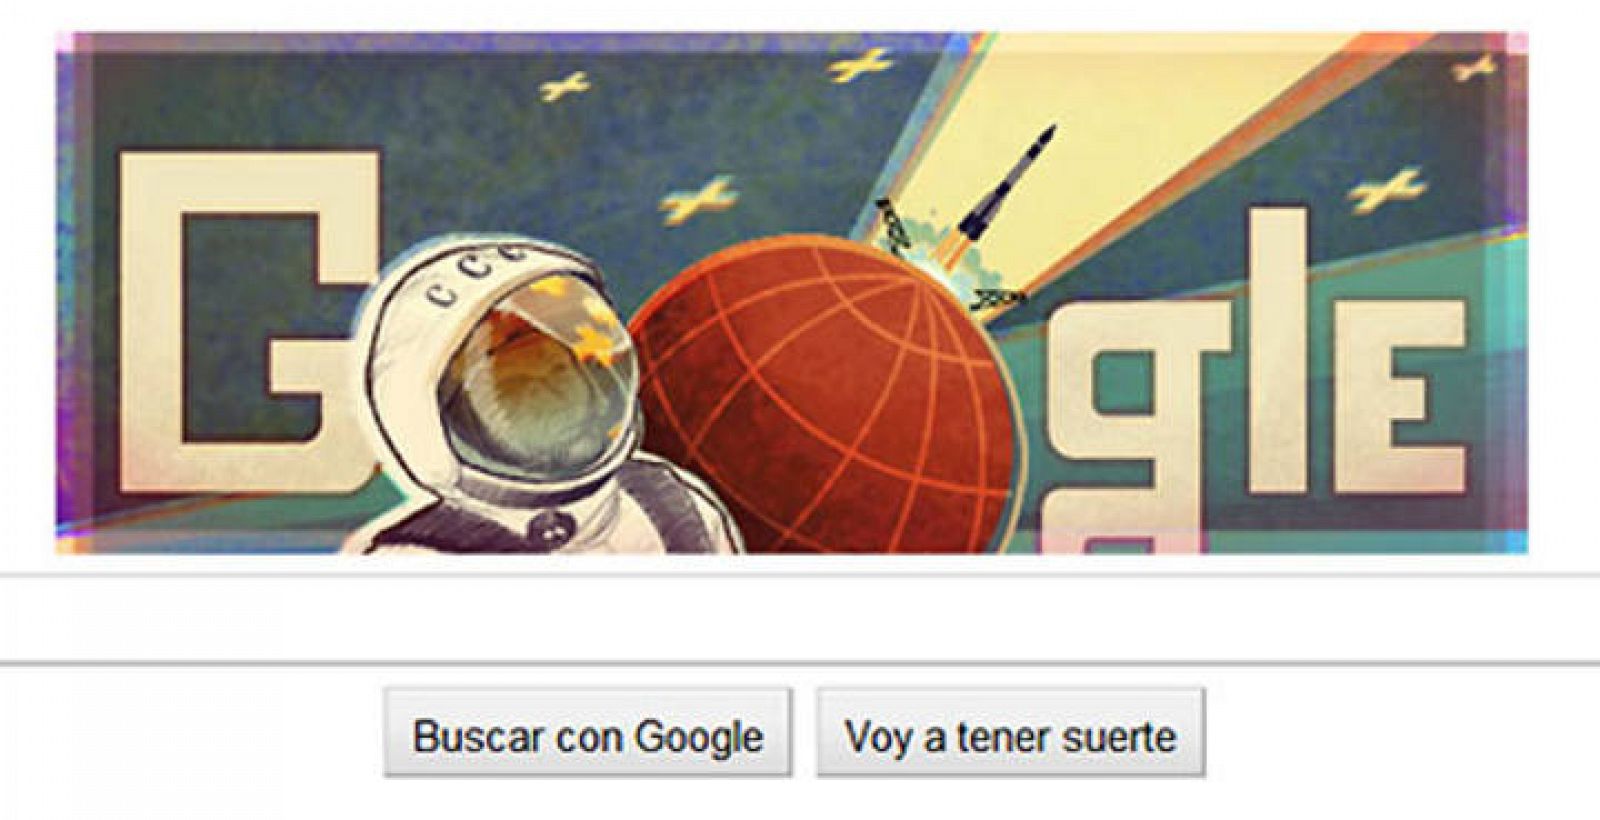 El logotipo interactivo de Google conmemora el primer viaje espacial de Yuri Gagarin hace 50 años